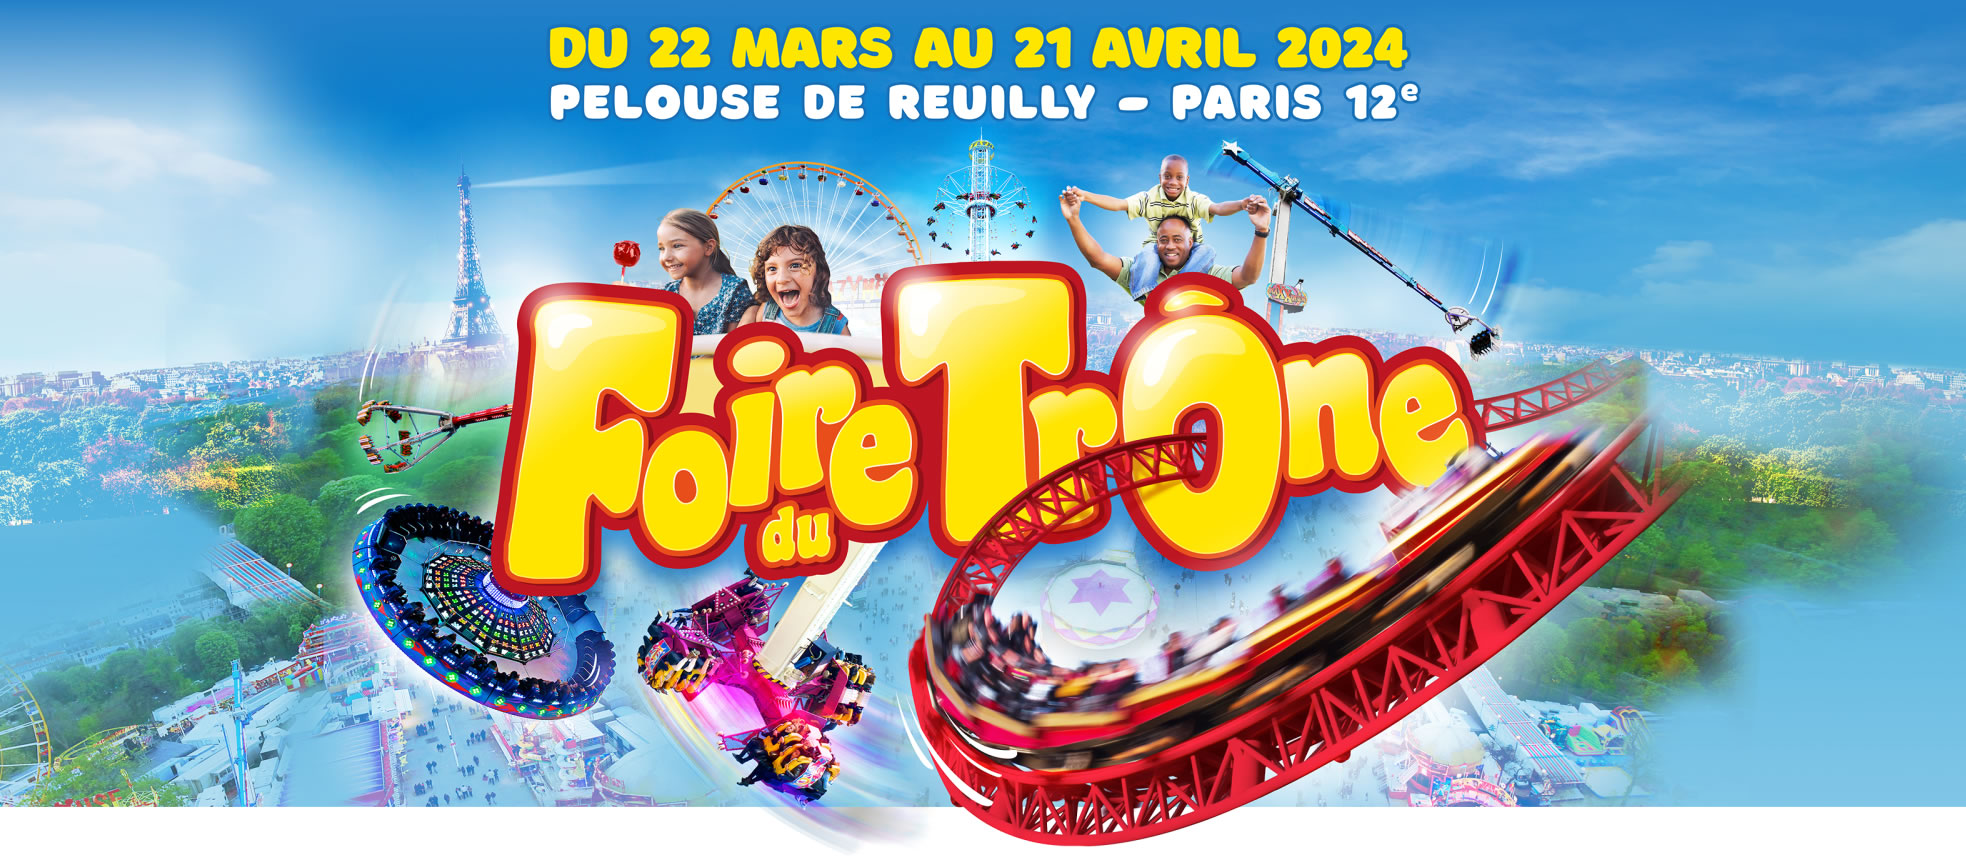 Foire du Trône - Du 22 mars au 21 avril 2024 - Pelouse de Reuilly - Paris 12e